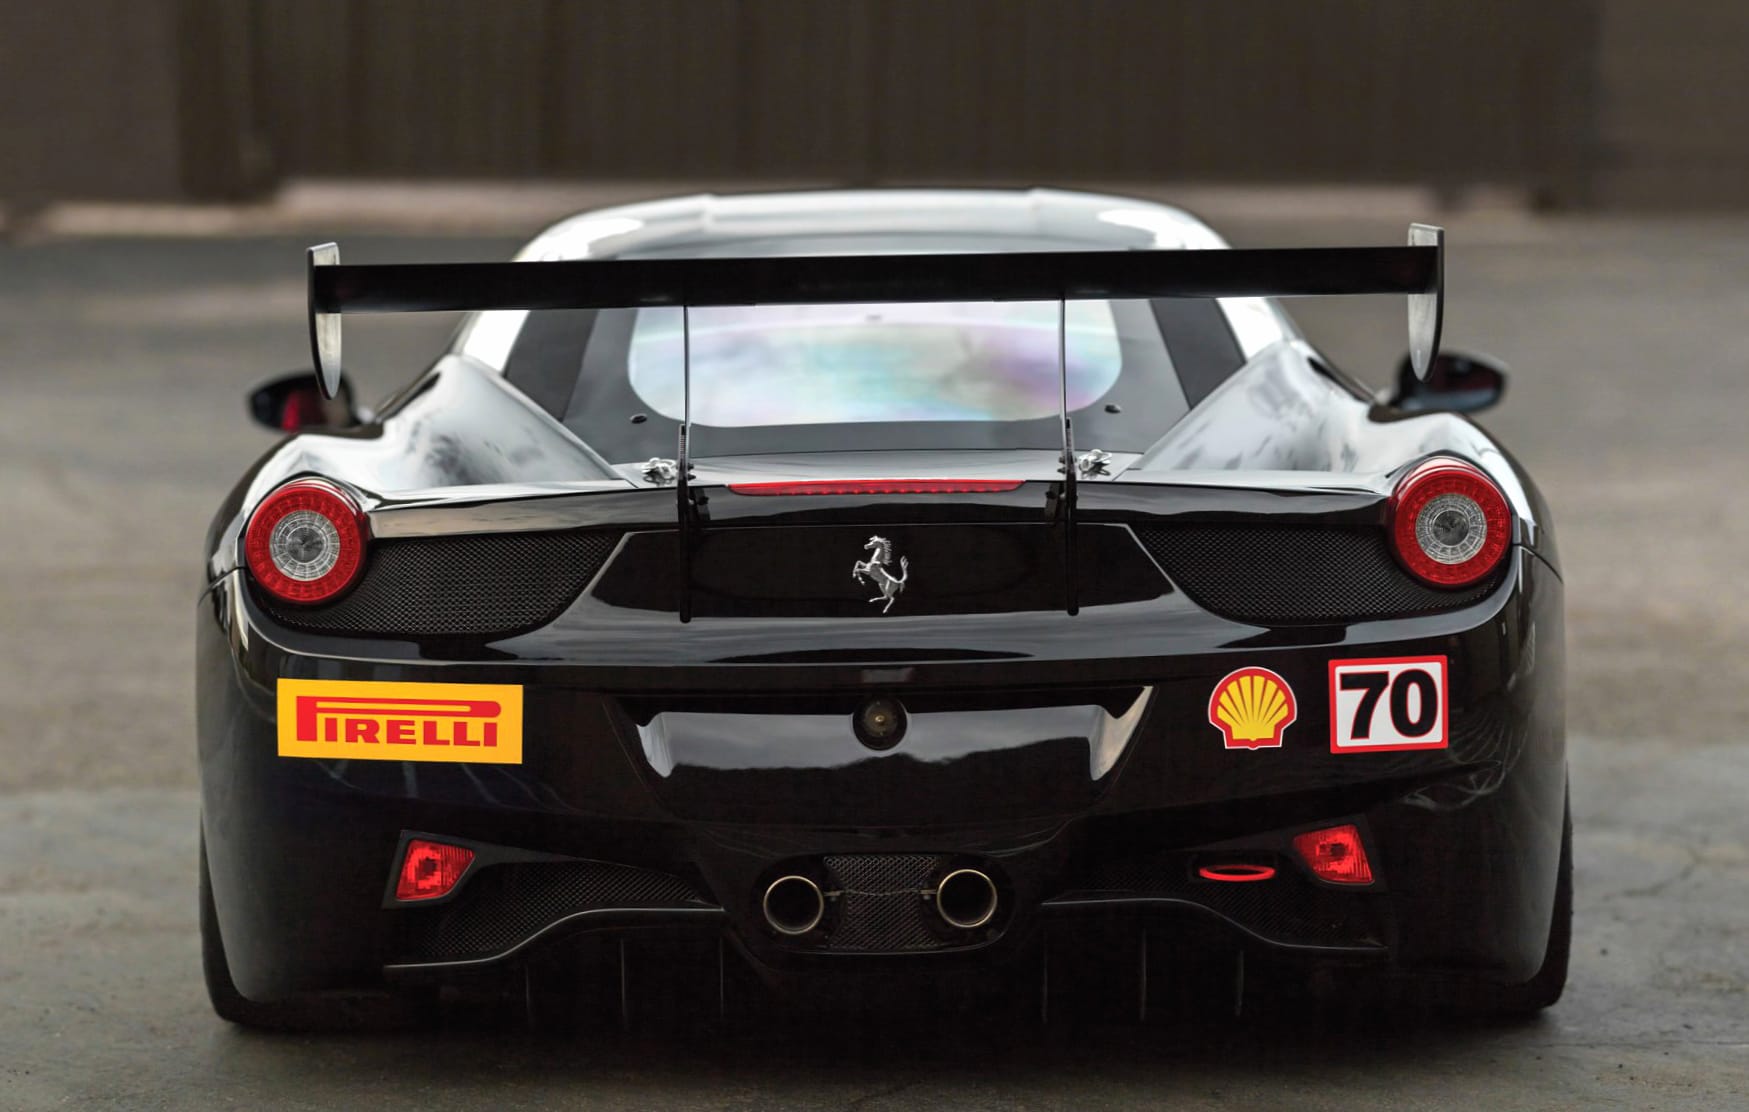 Ferrari 458 Challenge Evoluzione wallpapers HD quality